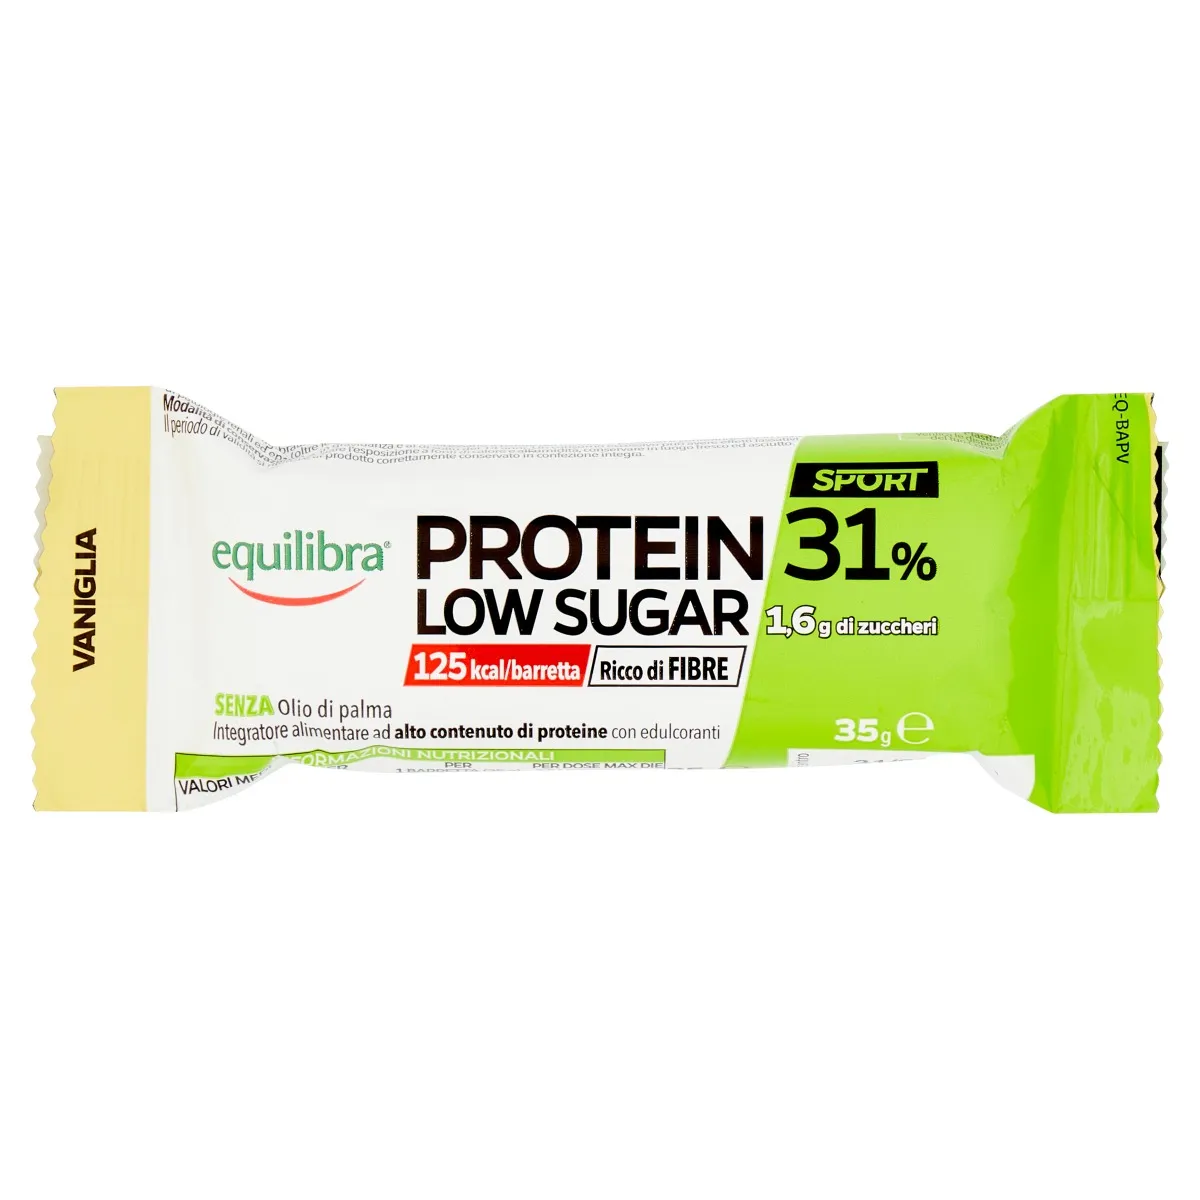 Equilibra Protein 31% Low Sugar Barretta Vaniglia 35 G Ricco di fibre